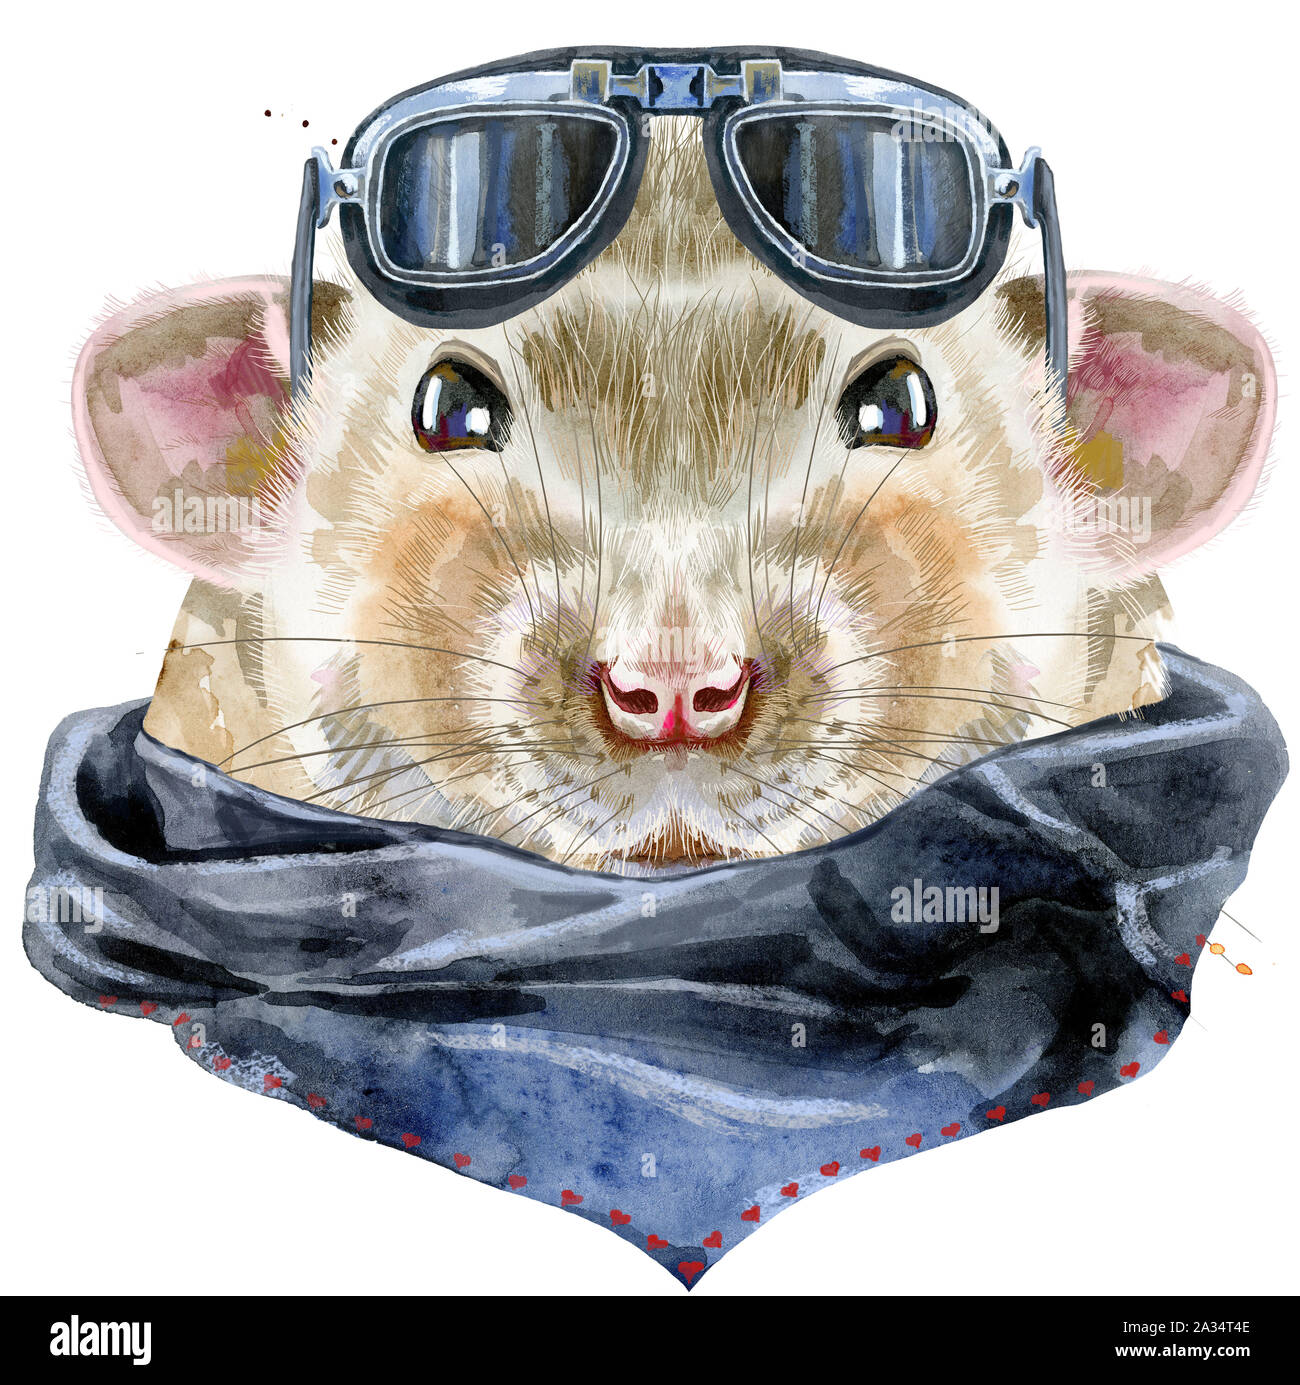 Süße Ratte mit biker Sonnenbrille und Spritzer für t-shirt Grafiken.  Aquarell Ratte Abbildung Stockfotografie - Alamy